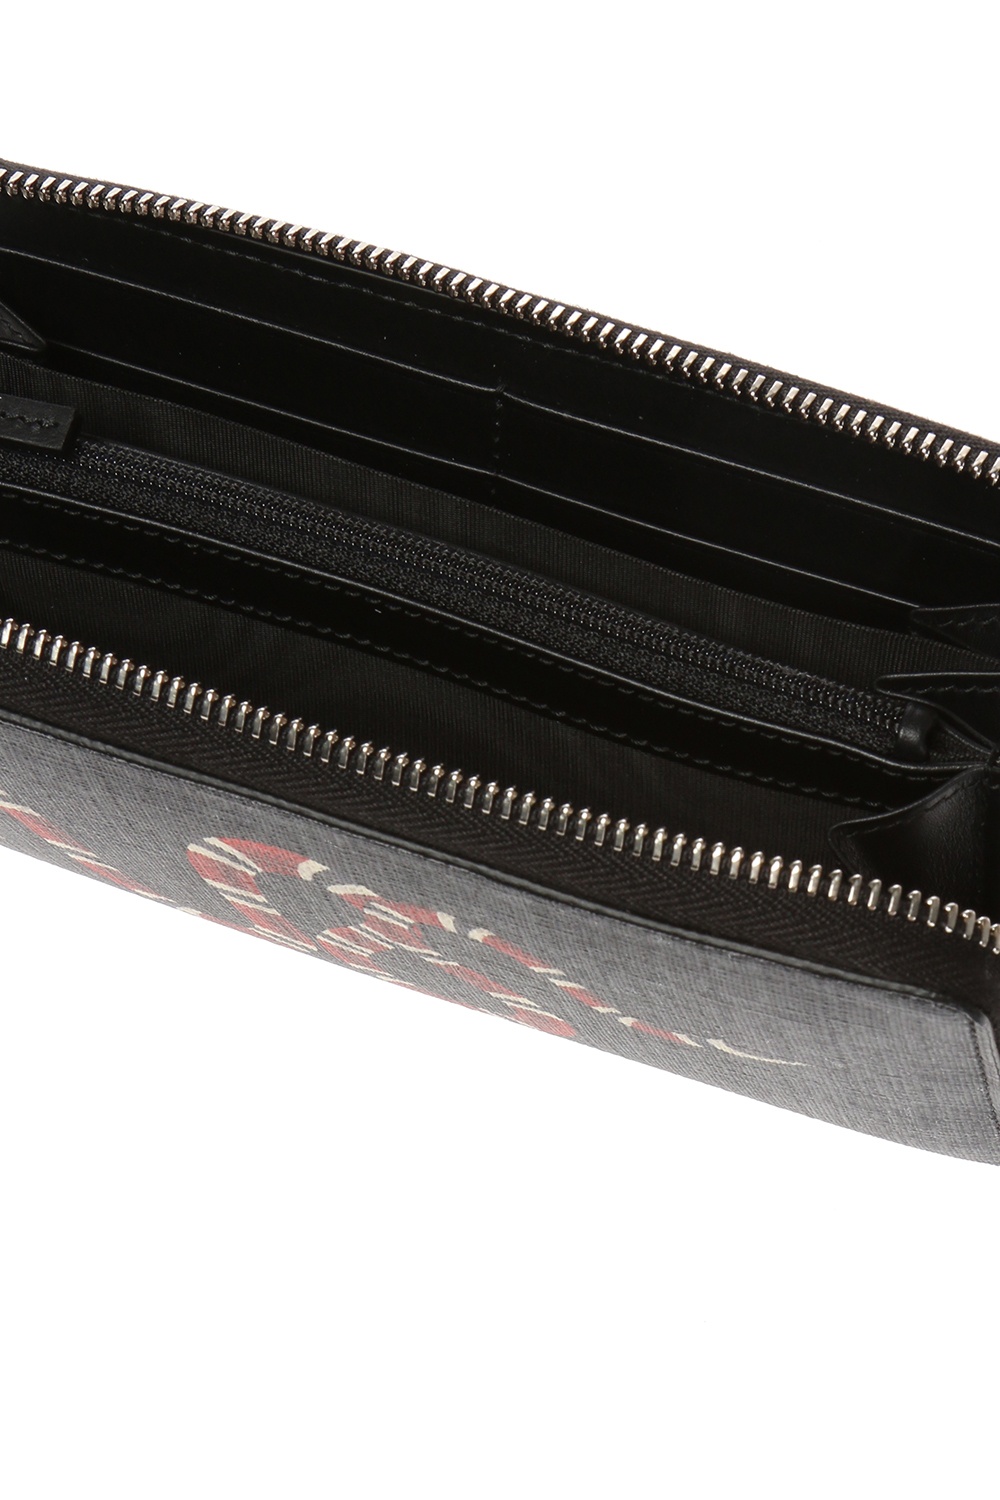 GUCCI Snake round zipper long wallet 451273